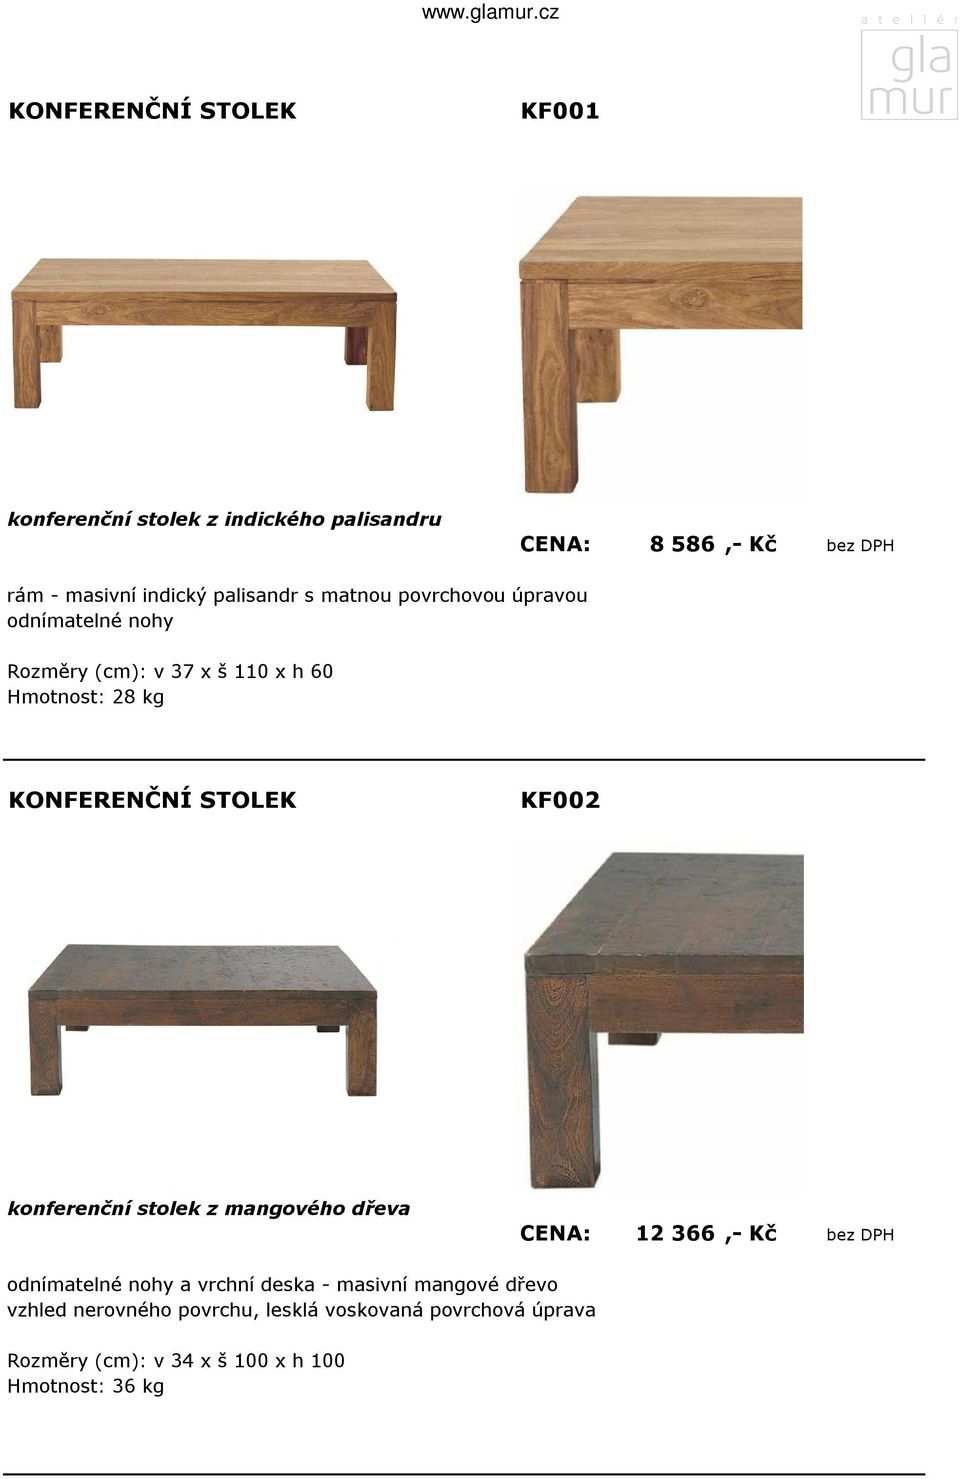 konferenční stolek z mangového dřeva CENA: 12 366,- Kč bez DPH odnímatelné nohy a vrchní deska - masivní